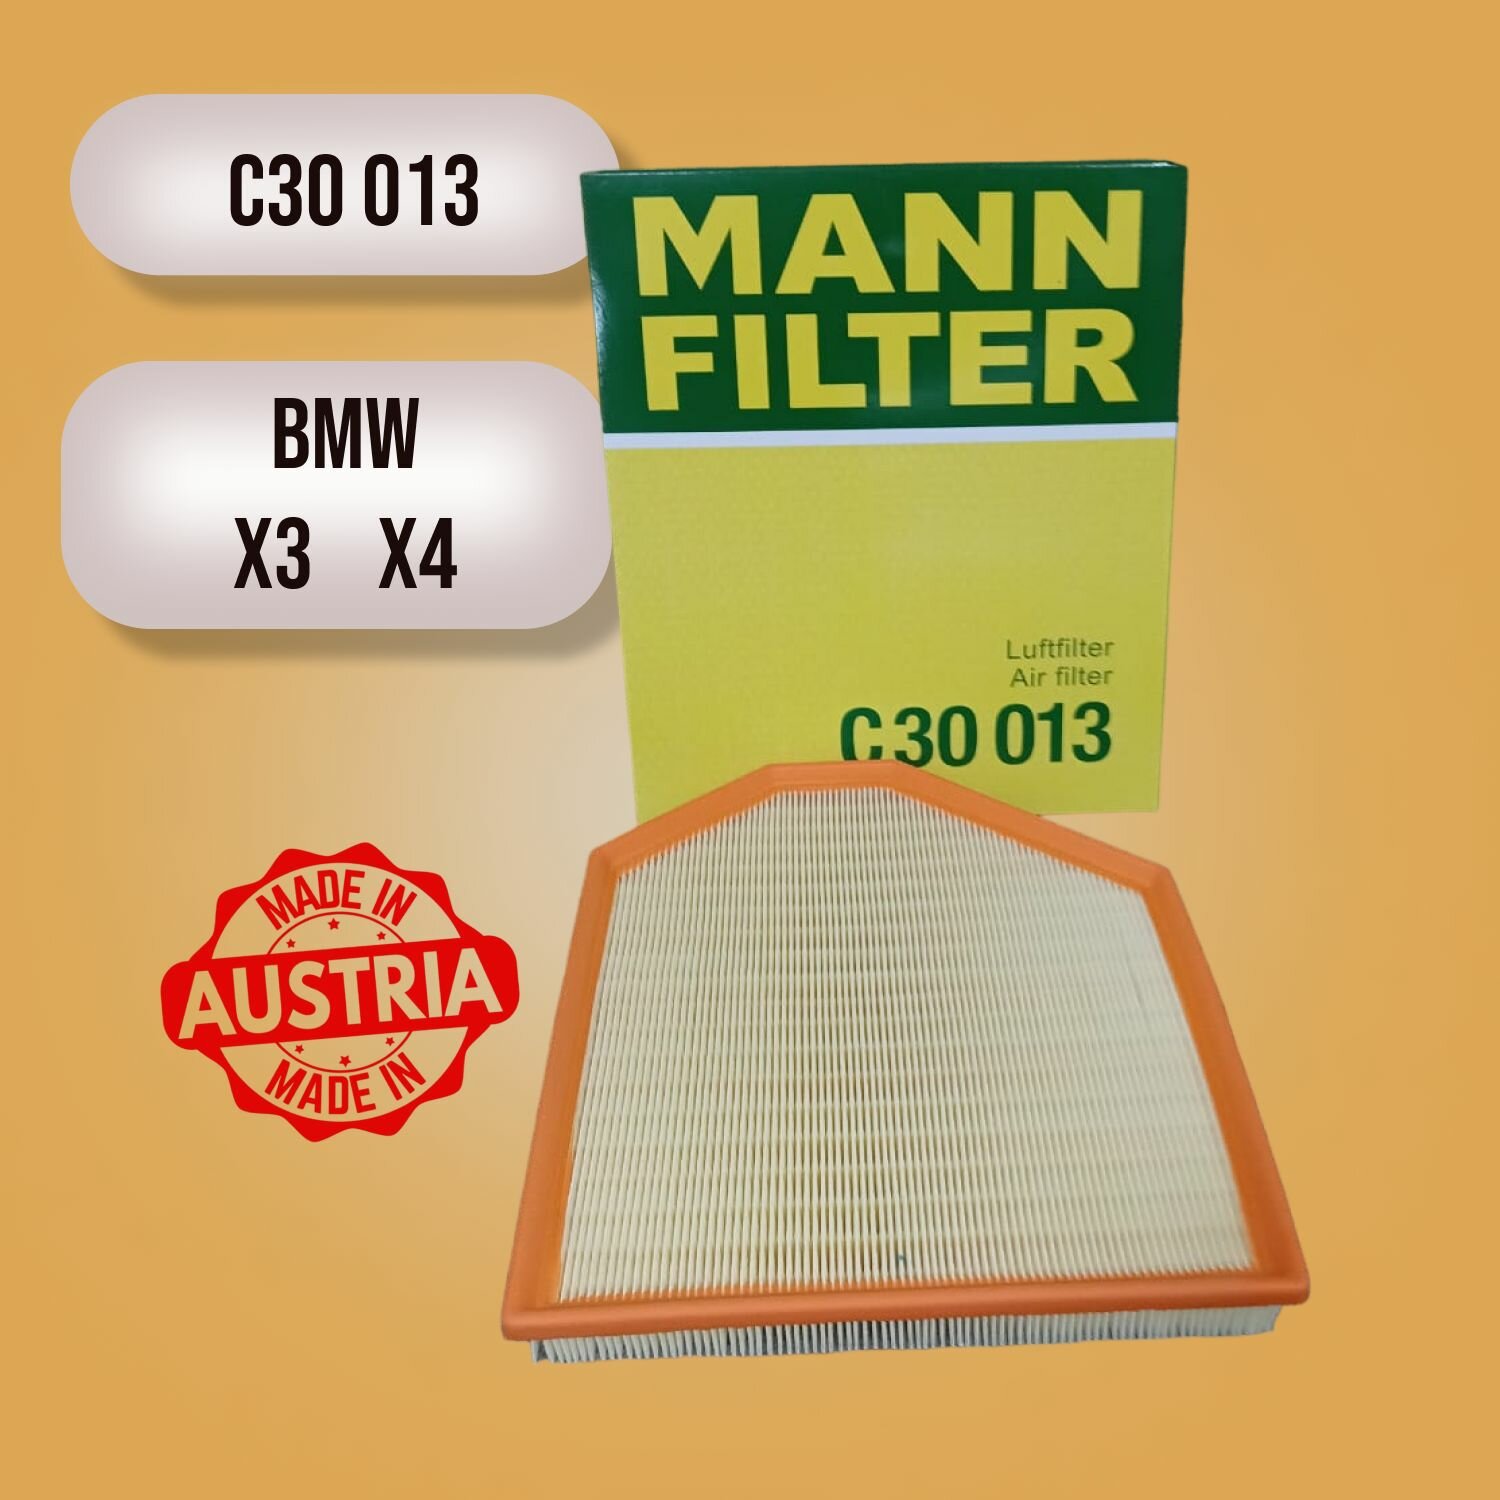 Воздушный фильтр MANN-FILTER C 30 013, BMW X3, X4